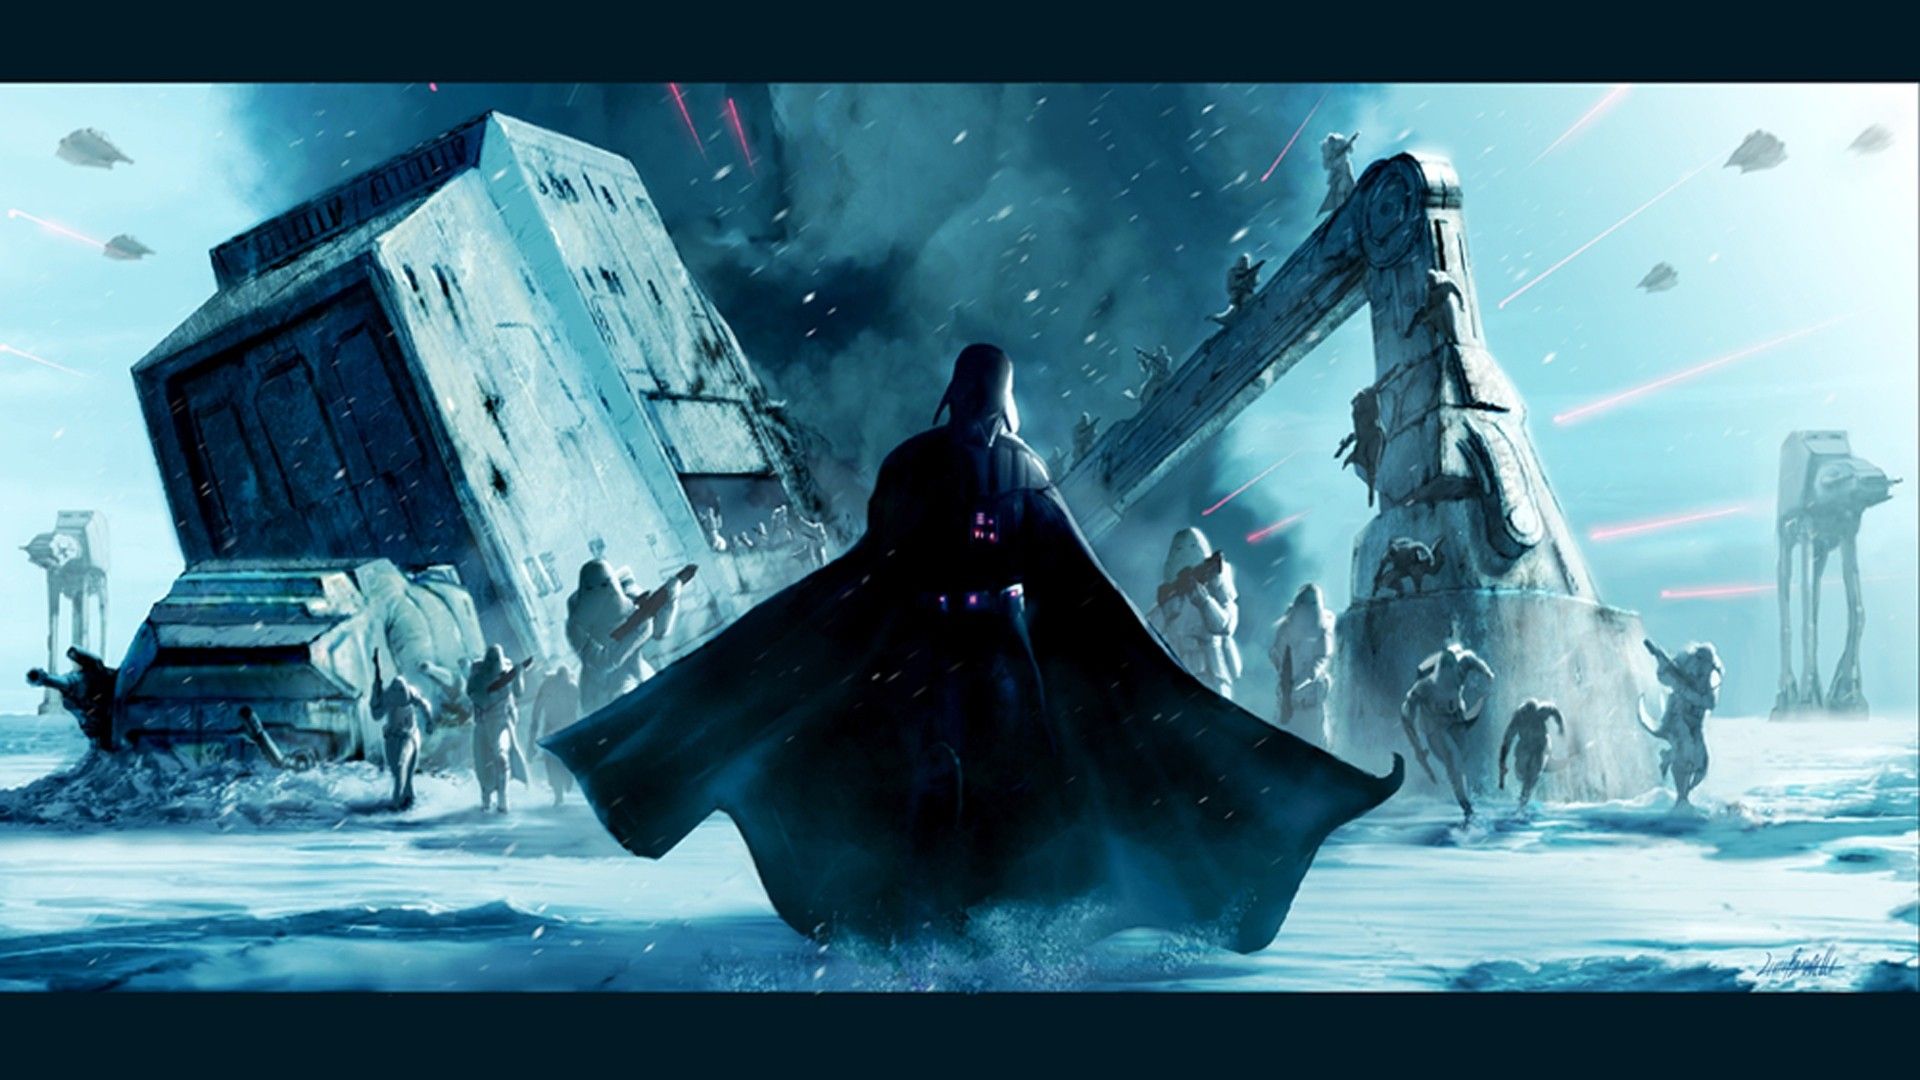 Star Wars Background Desktop | Wallpapers, Backgrounds, Images ...